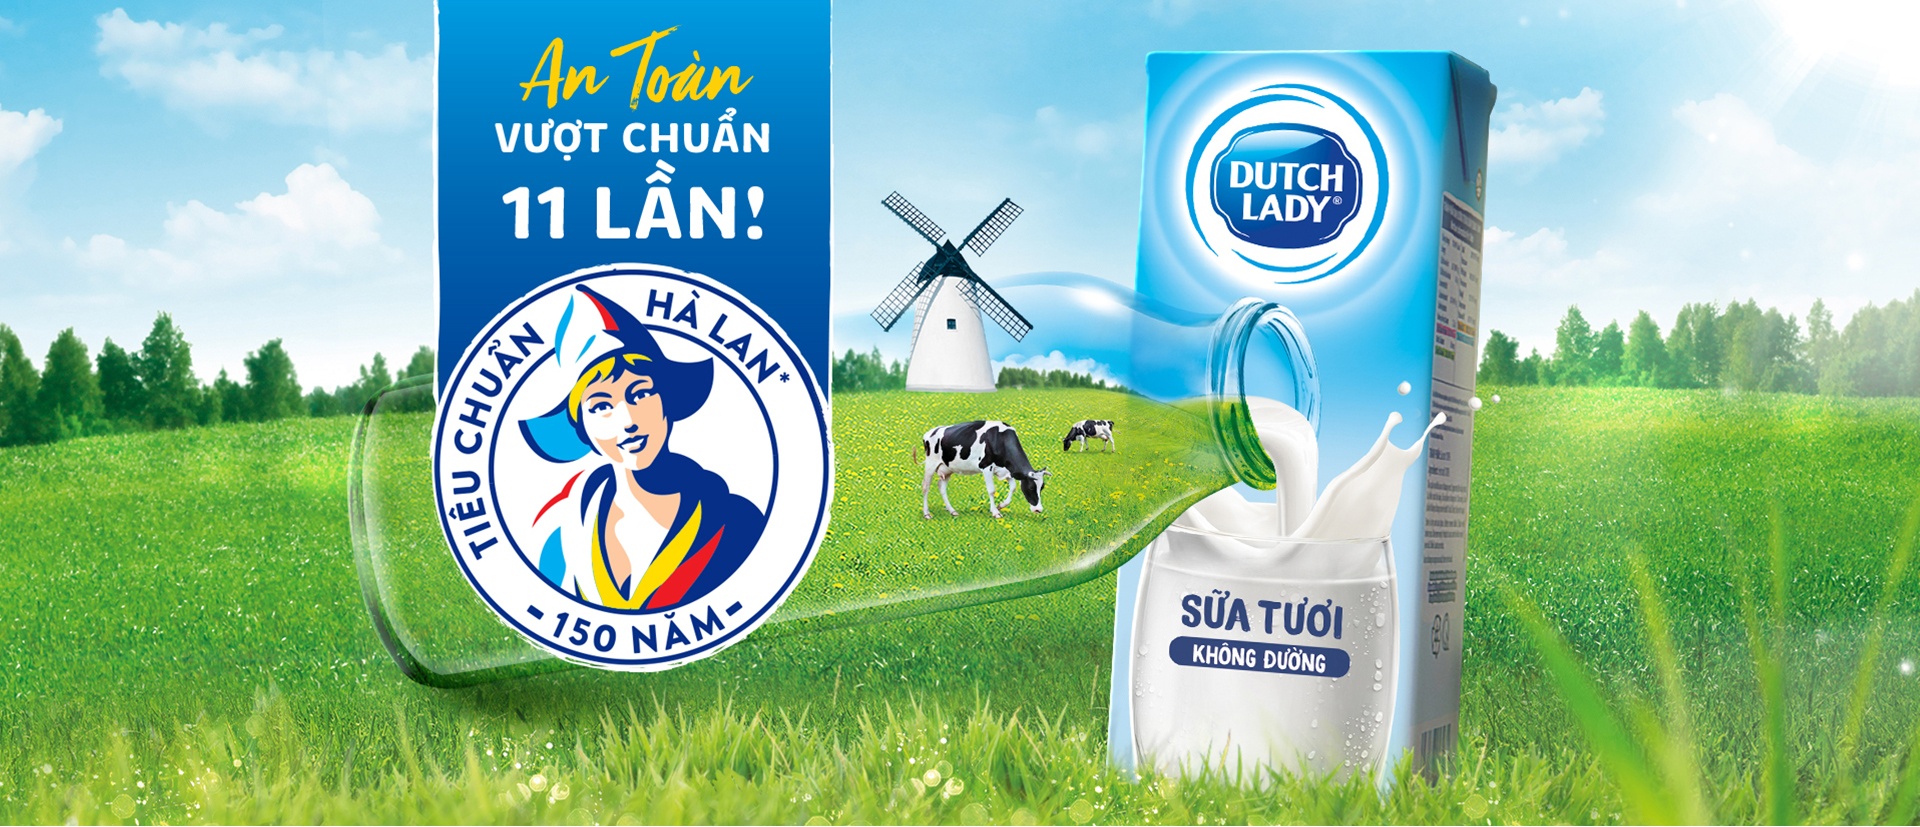 Sữa tươi tiệt trùng cho bé Dutch Lady